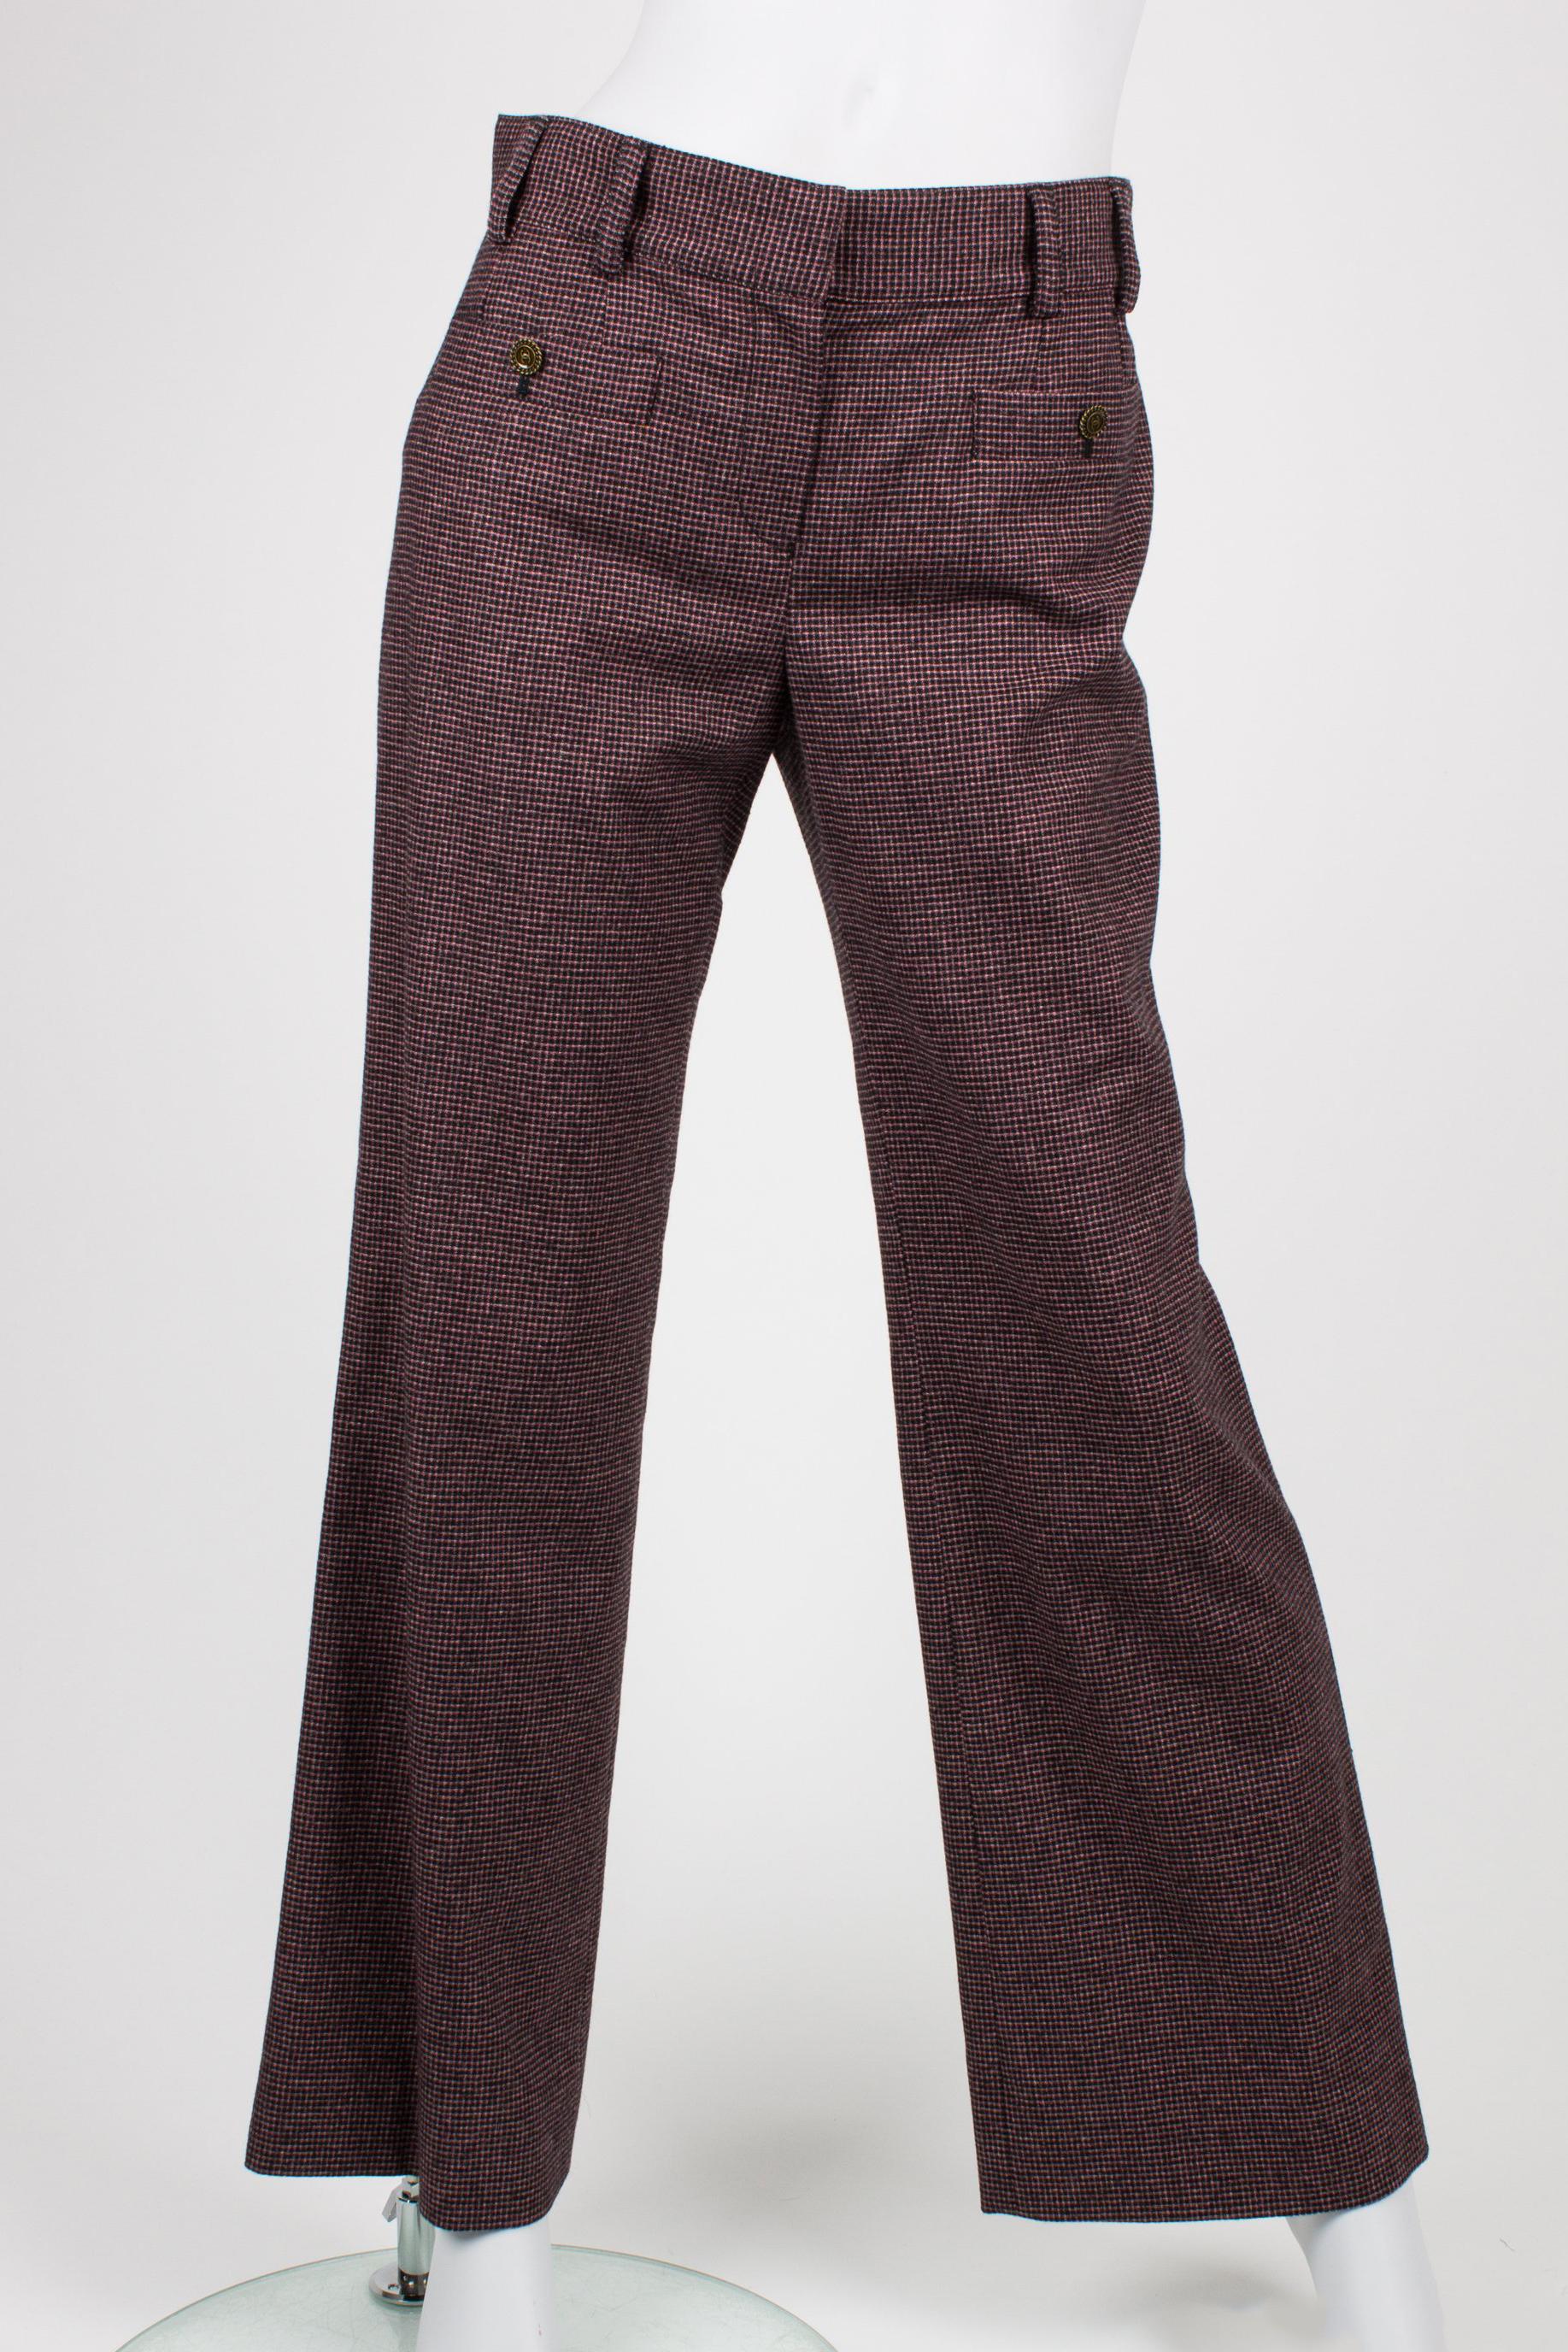 Black Chanel Cardigan/Top/Pants 3-pcs Suit - brown/pink For Sale